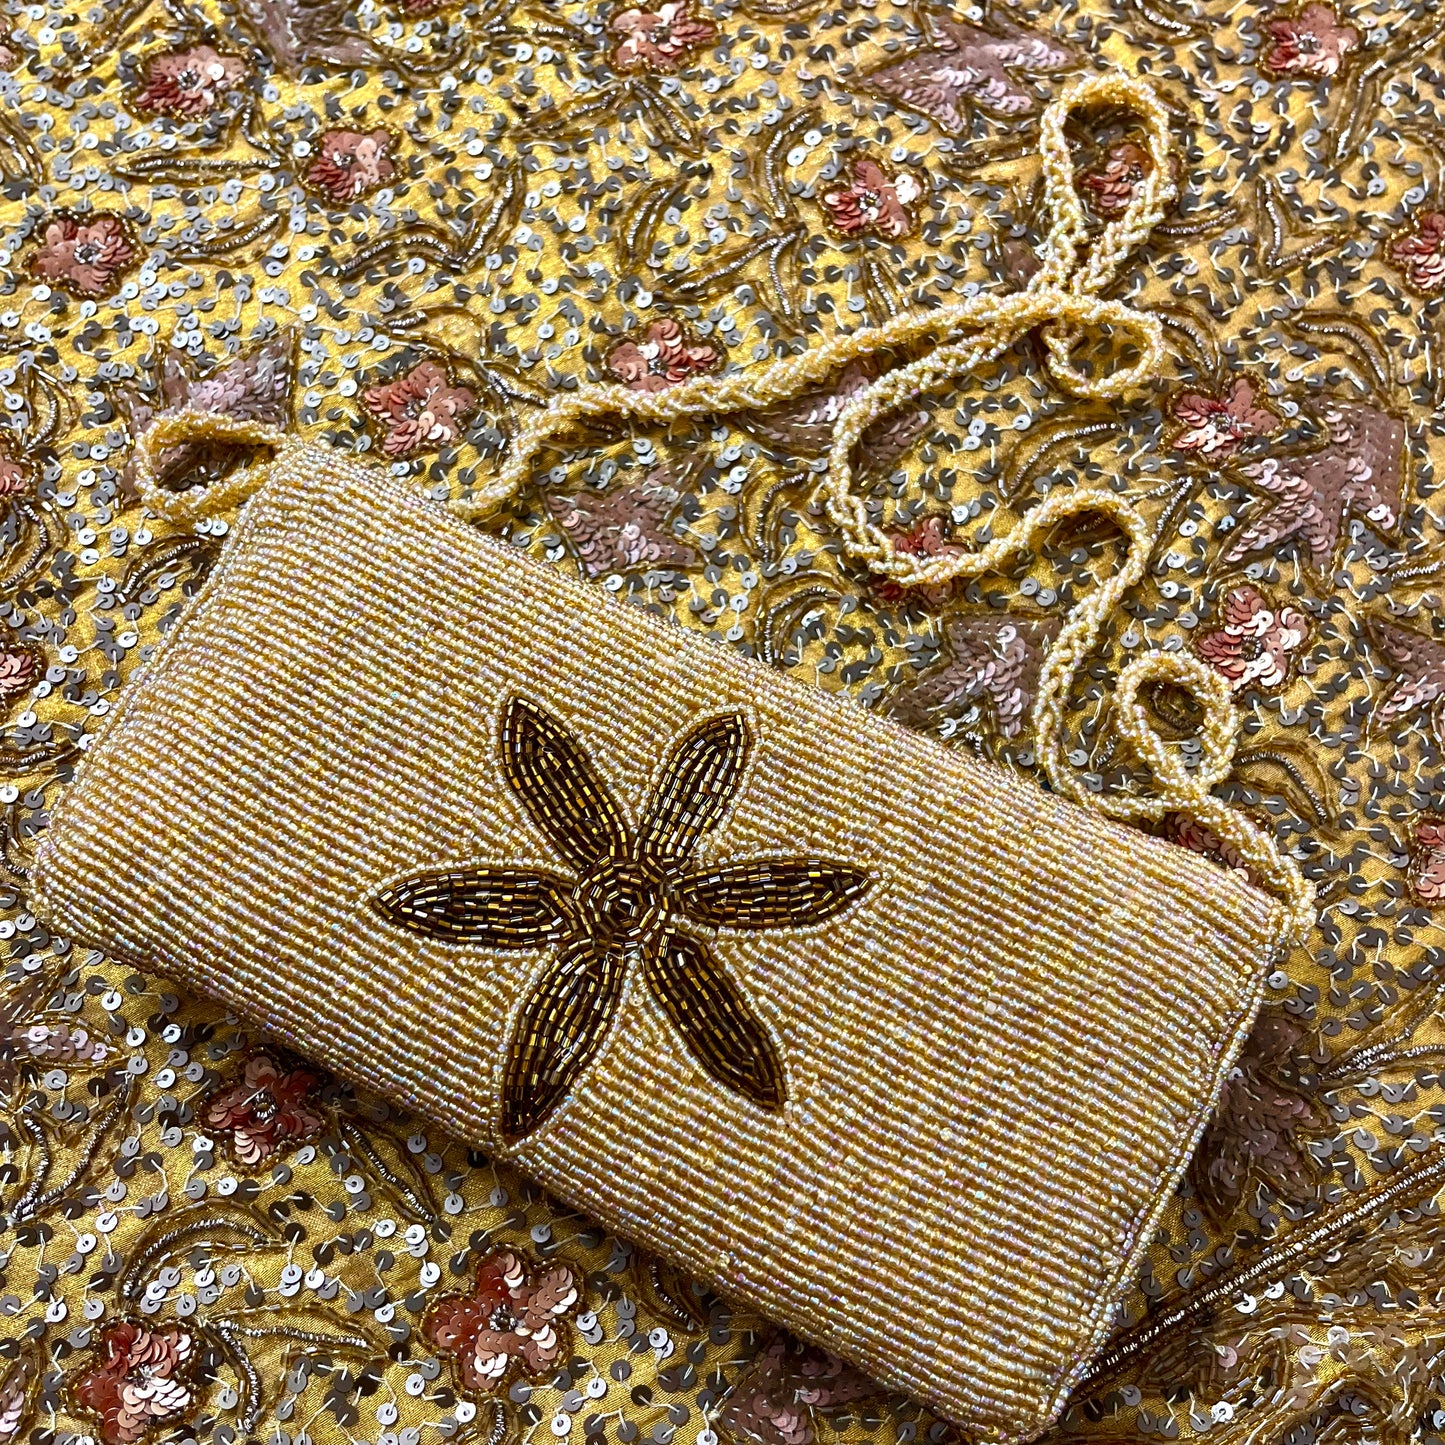 Golden bead embellished purse